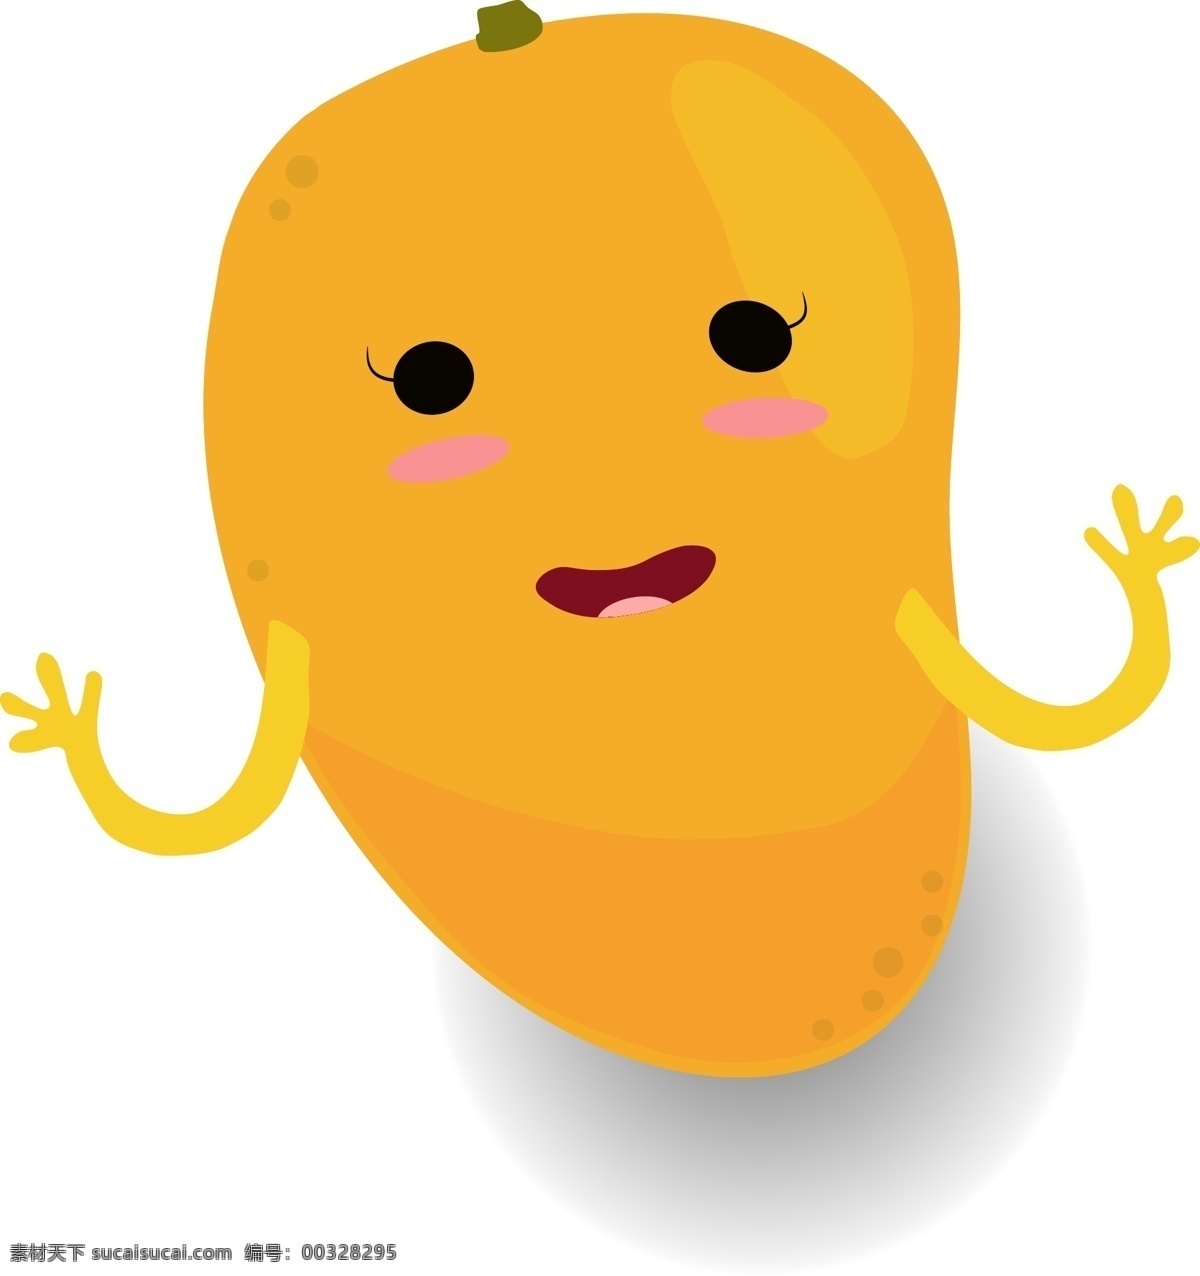 小 清新 可爱 水果 卡通 形象 芒果 小人 矢量 食物 黄色 橙色 拟人 儿童 果盒包装 水果包装 卡通水果 芒果素材 卡通芒果 水果素材